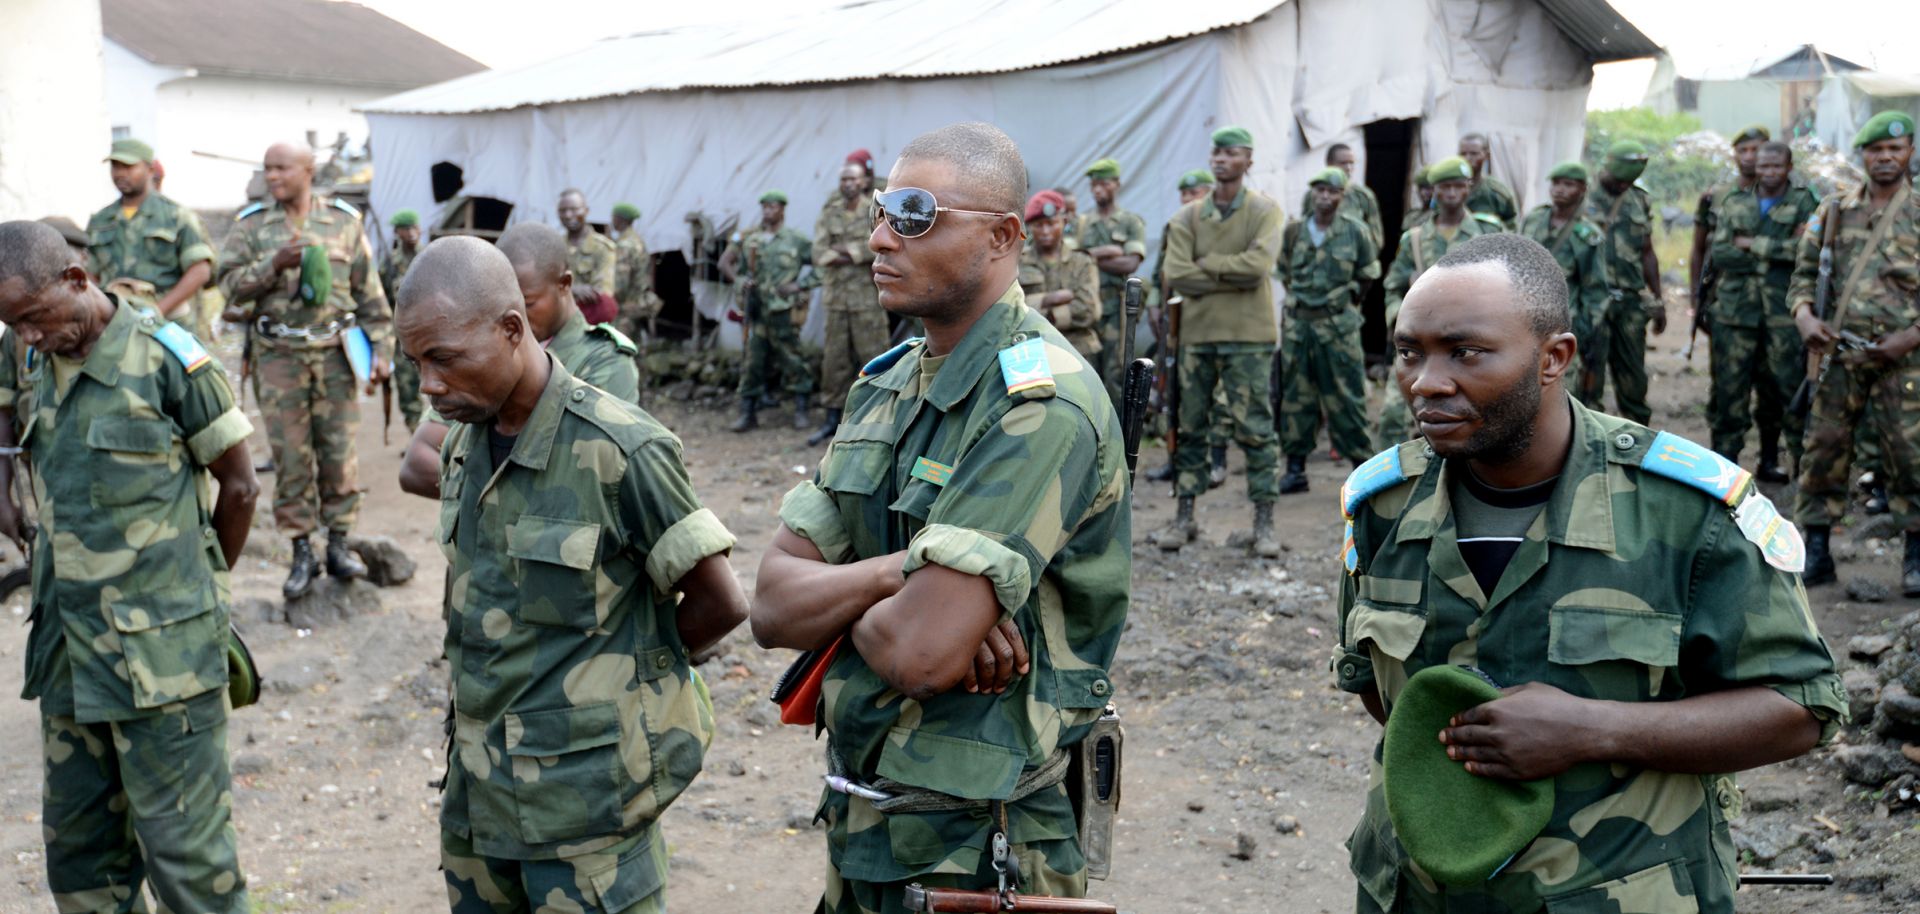 Democratic Republic of the Congo: A U.N. Intervention in Kivu